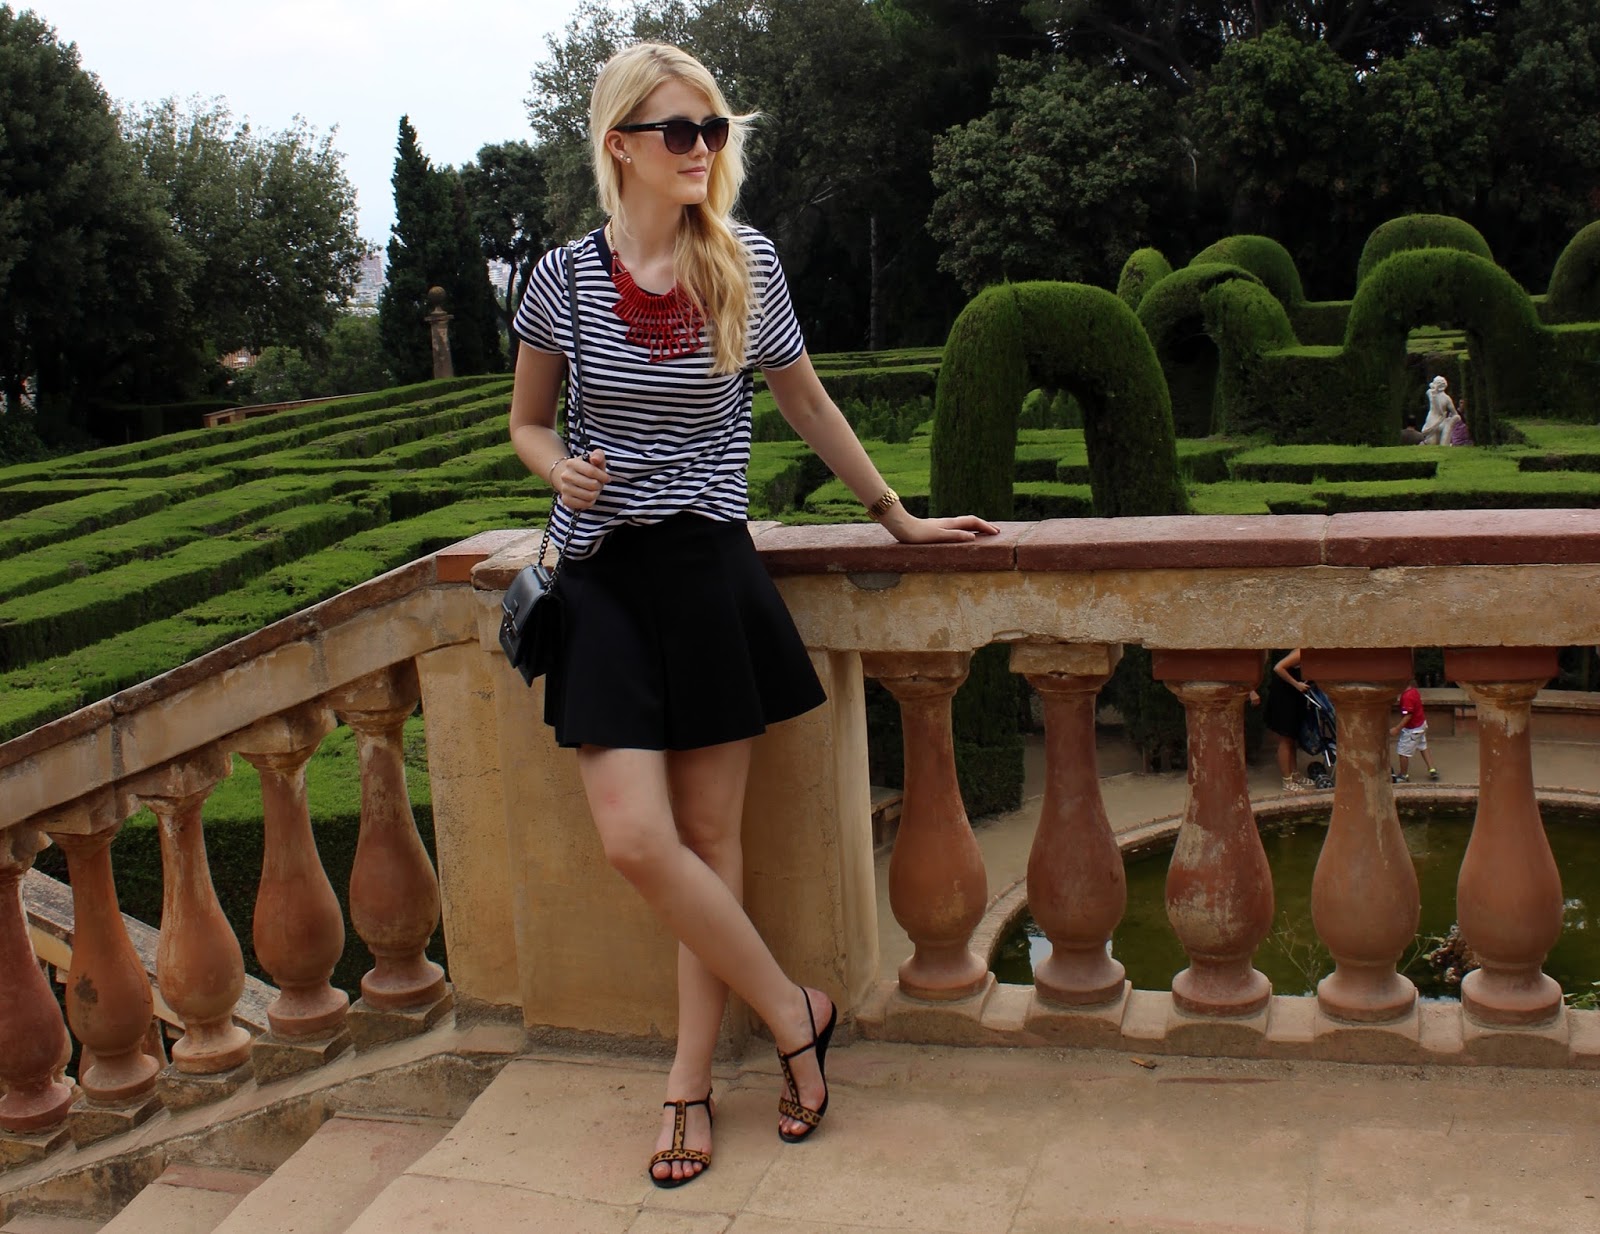 TheBlondeLion outfit stripes statement necklace Parc del Laberinth Barcelona